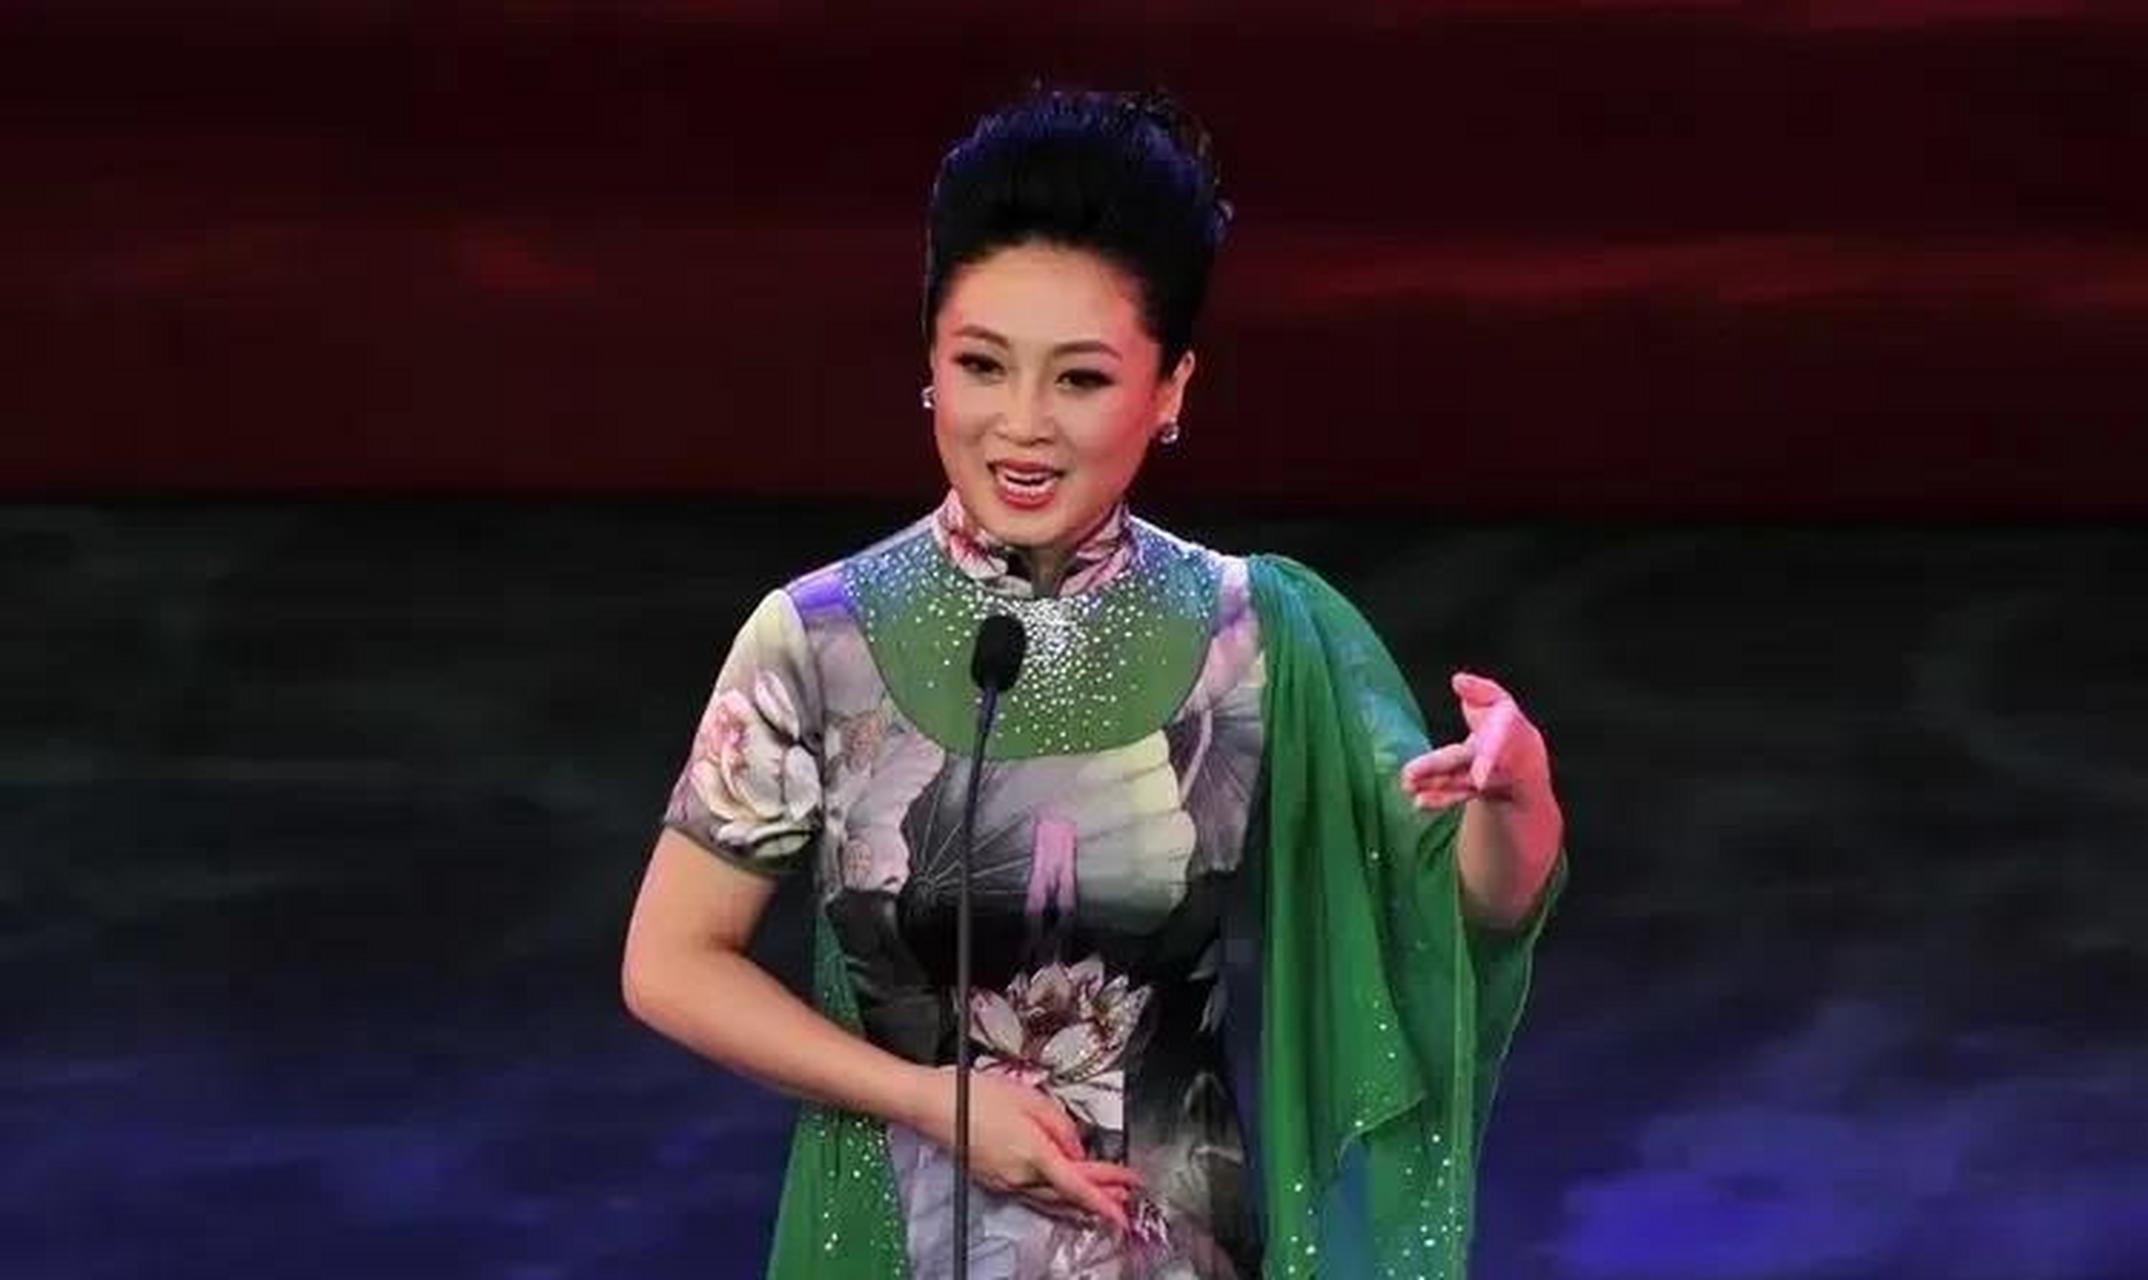 几年前,著名京剧演员姜亦珊在家中上吊自杀身亡